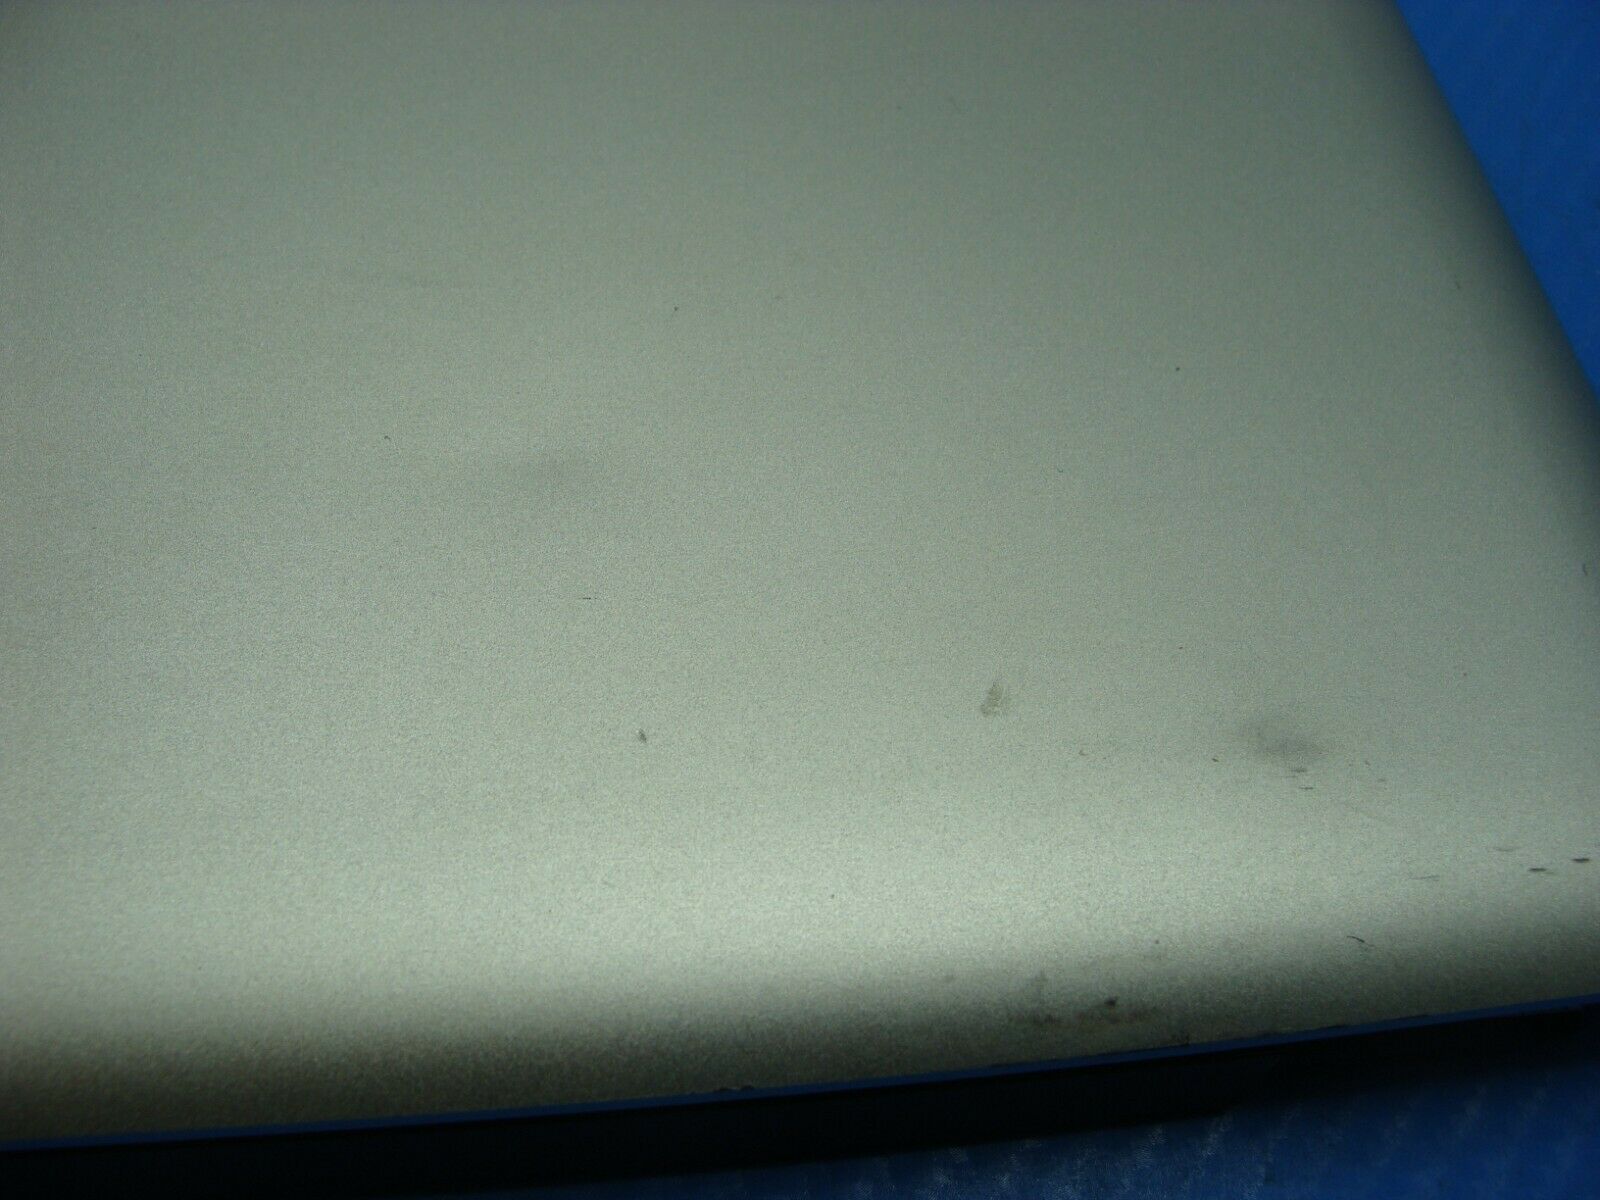 MacBook Pro A1278 MB990LL/A 2009 13